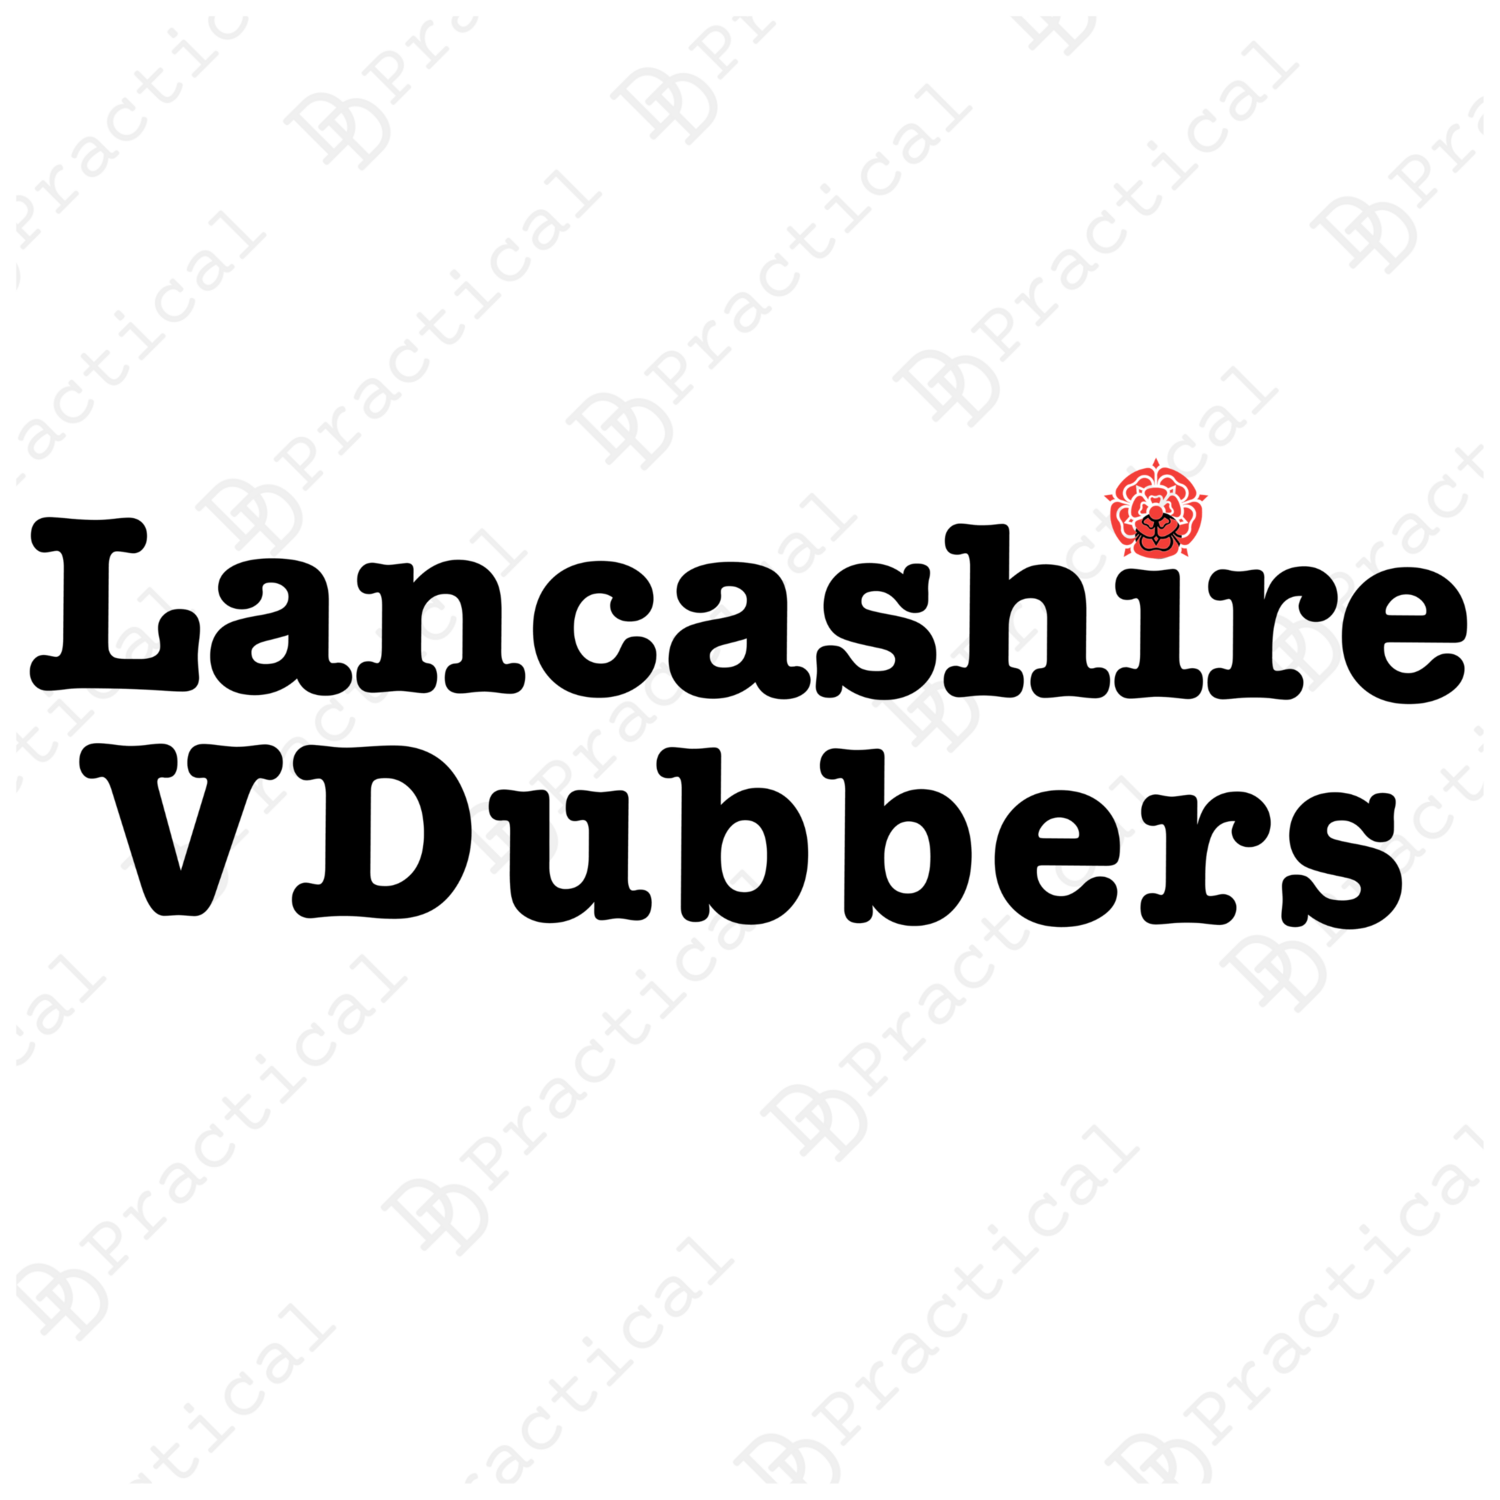 Lancashire VDubbers Rear Window Stickers